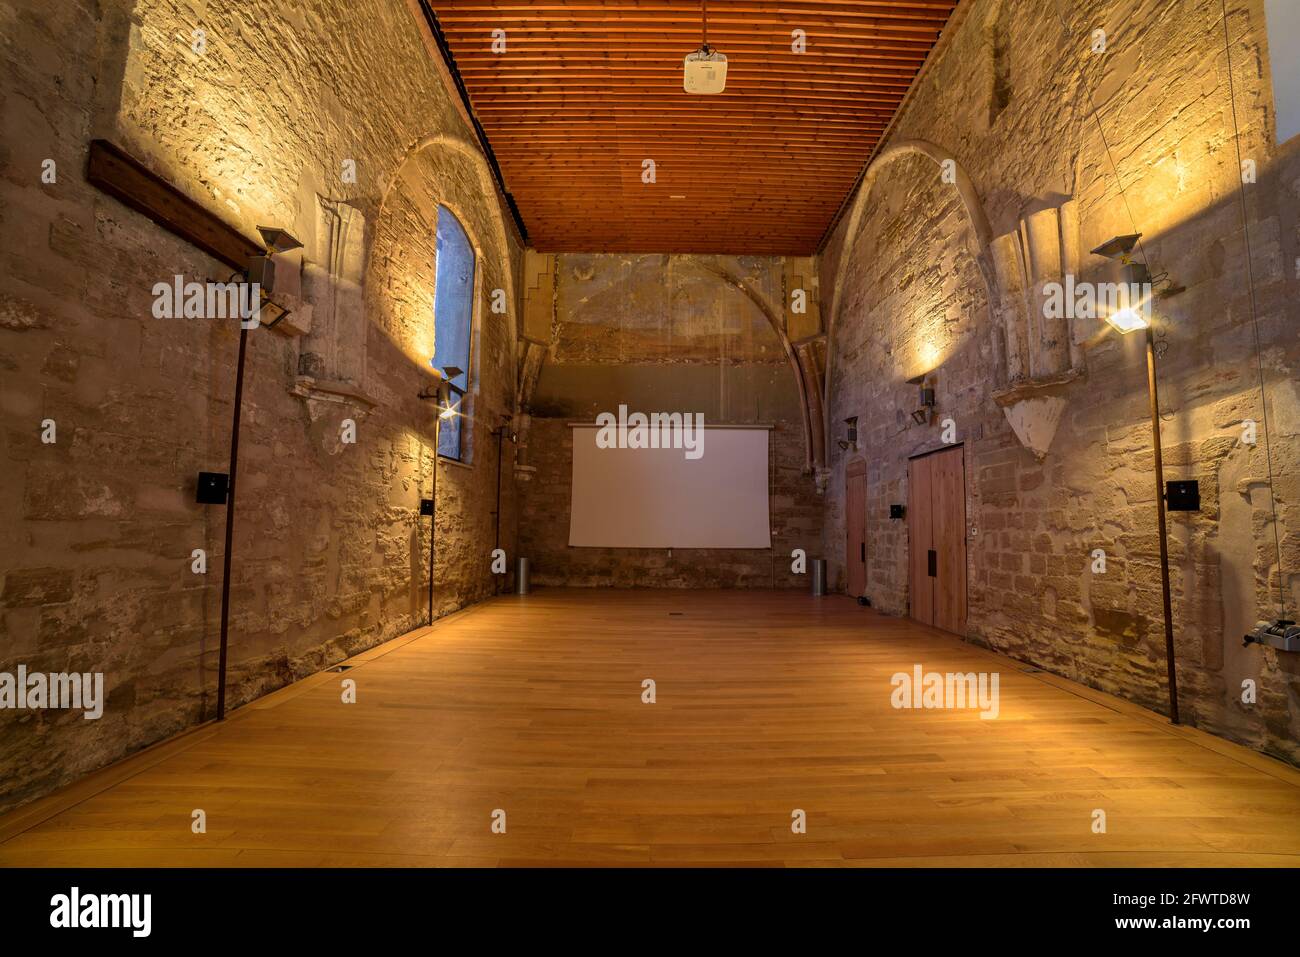 Interior room of the Castell del Rei or La Suda castle (Lleida, Catalonia, Spain) ESP: Sala interior del Castillo del Rey o La Suda (Lérida, España) Stock Photo